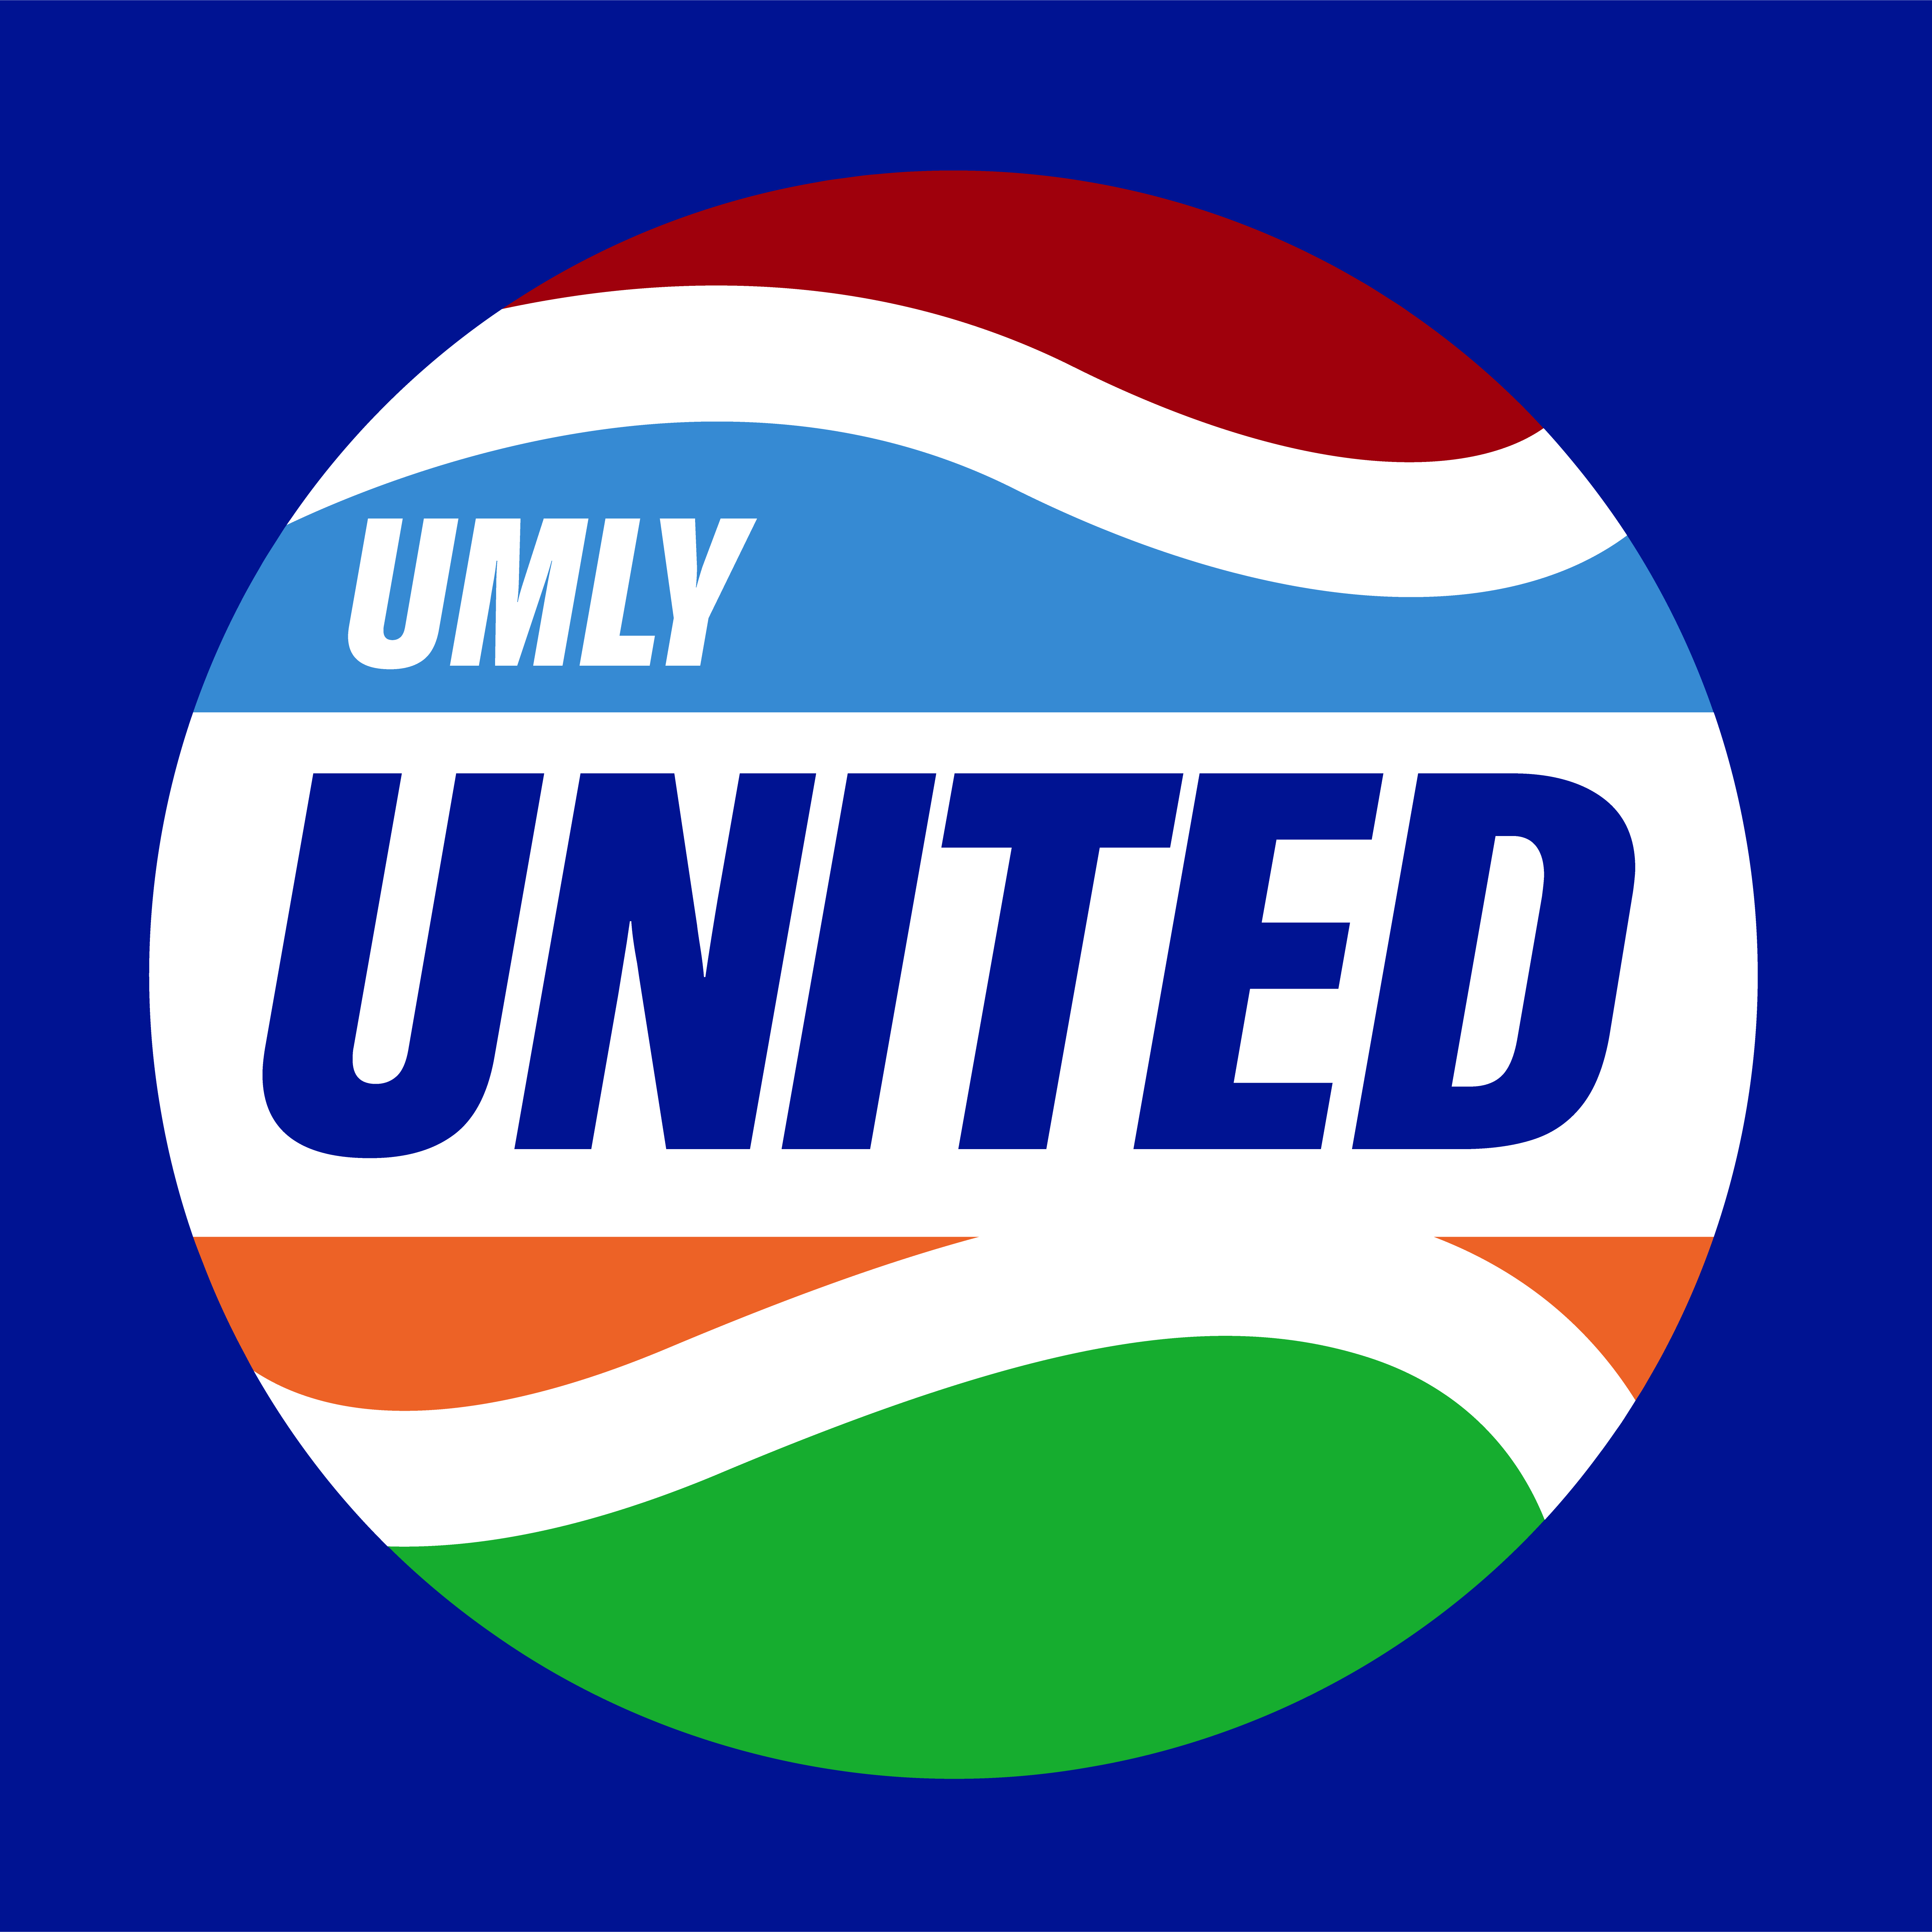 images/UMLY United - logo on blue.png